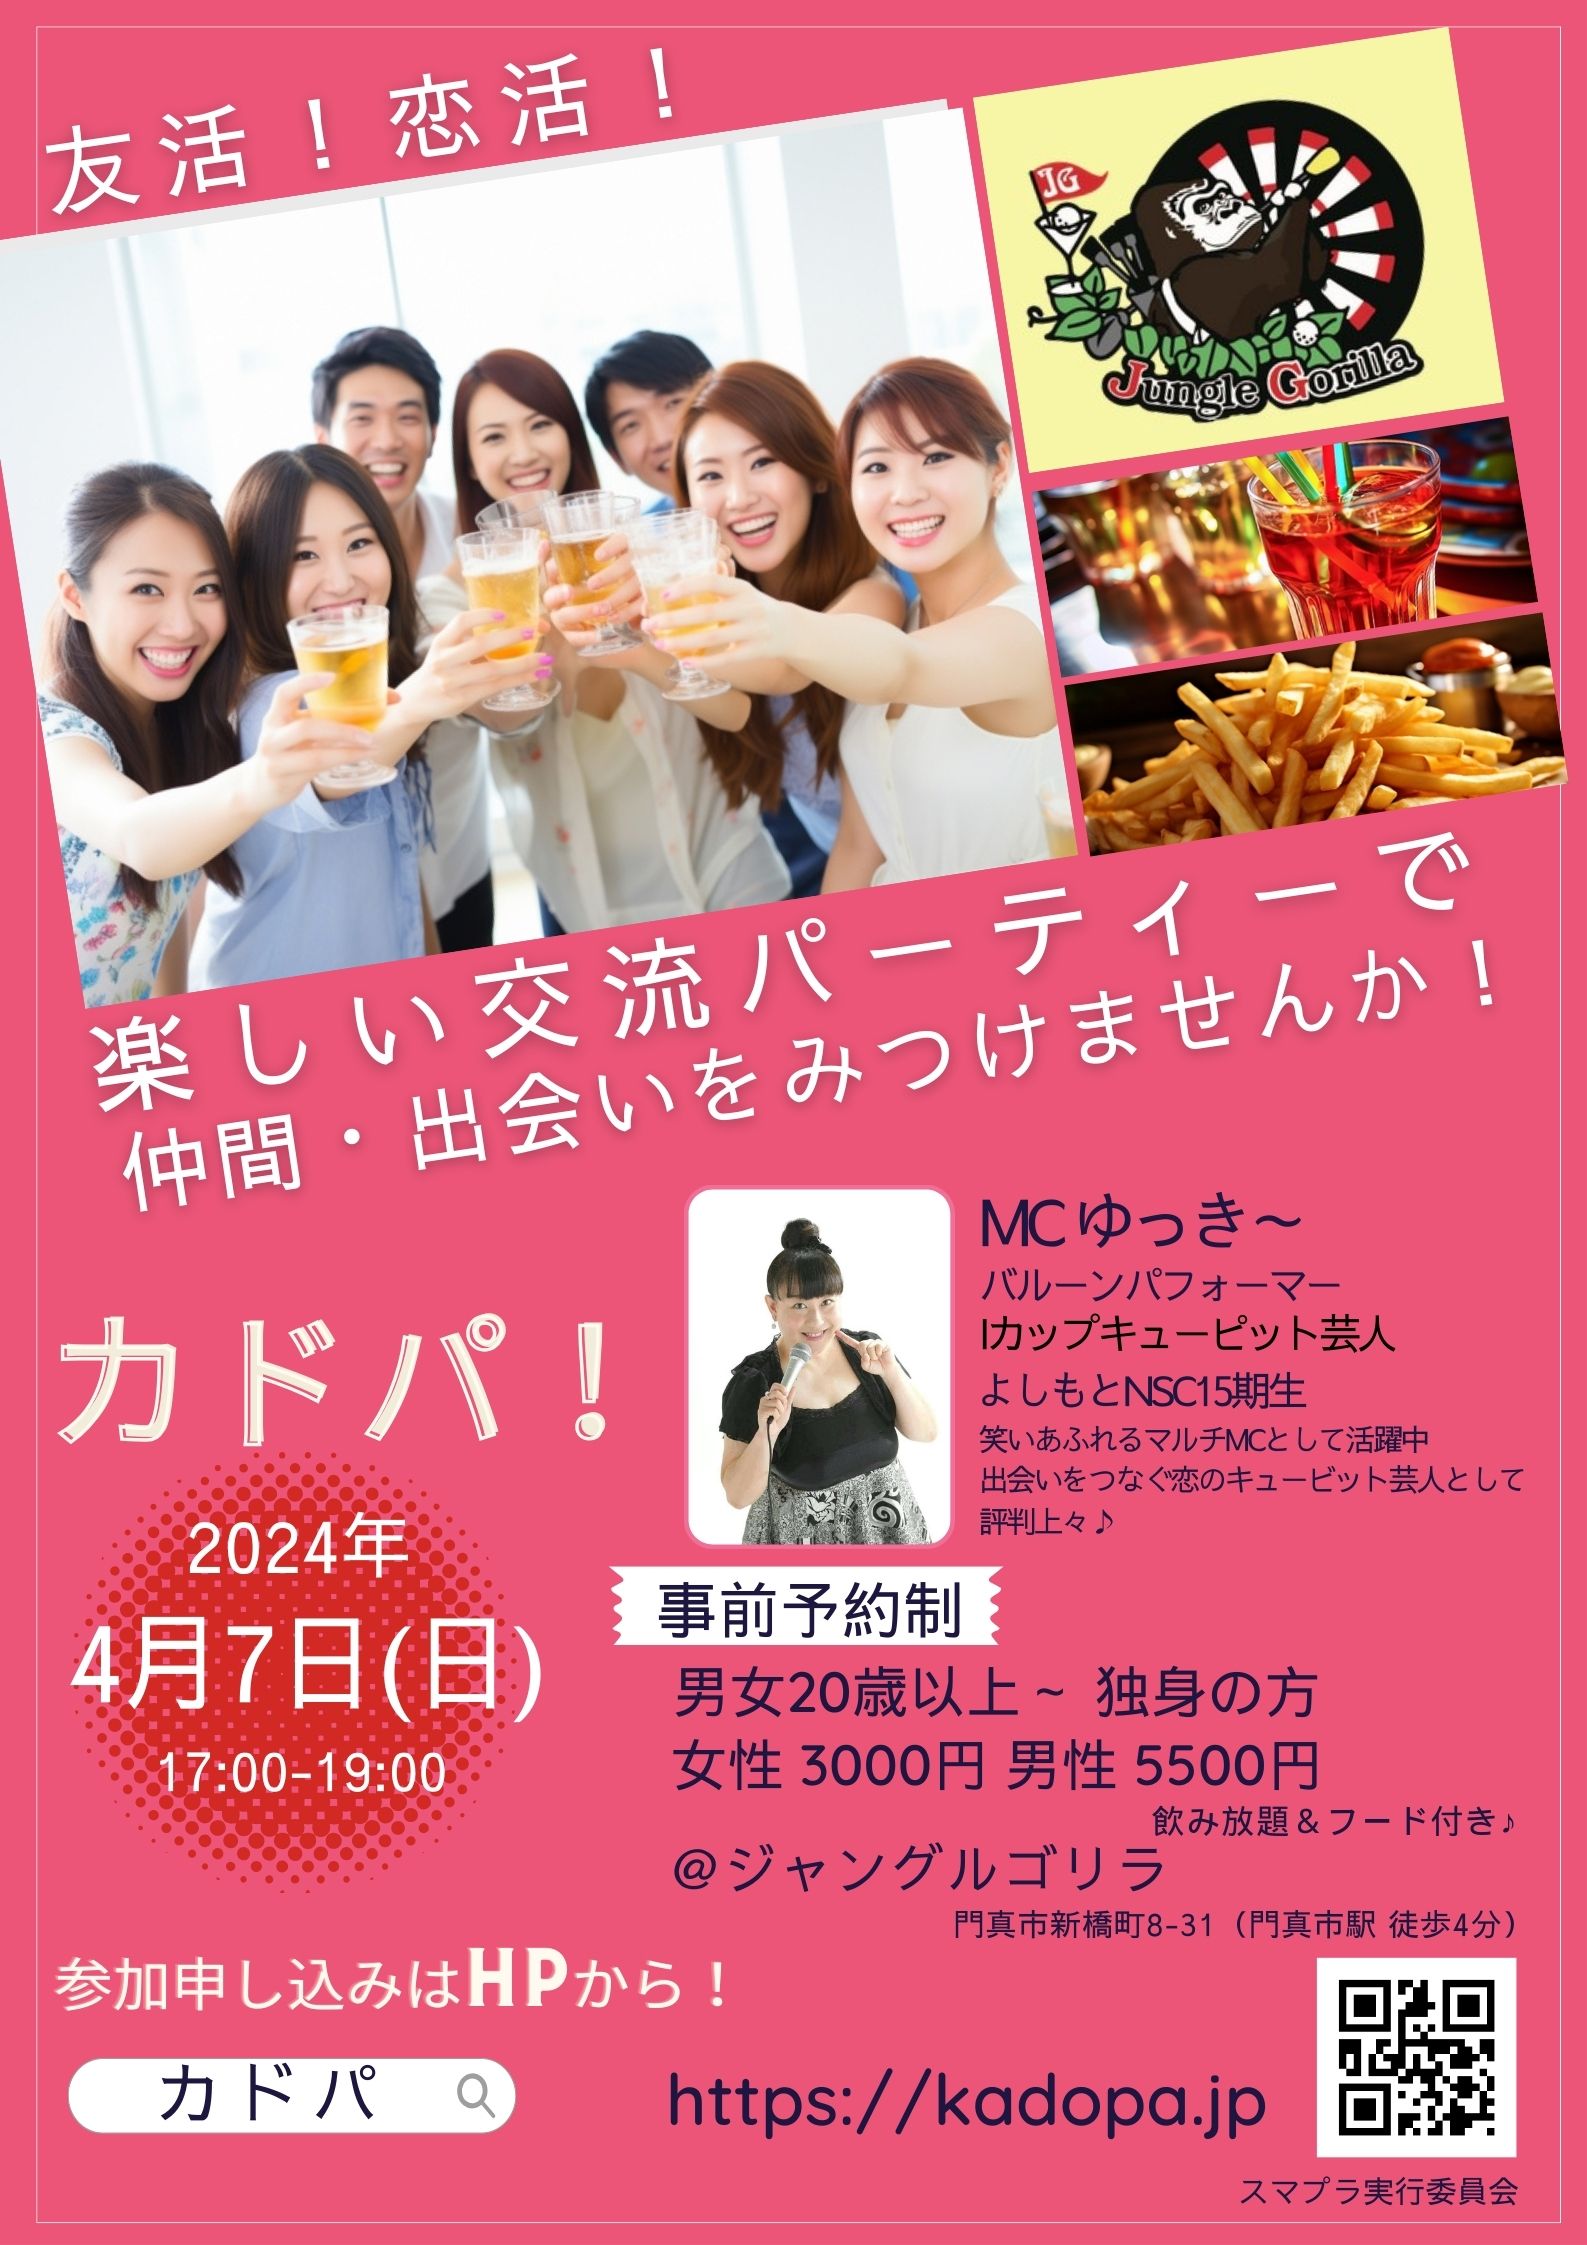 「カドパ」大阪の出会い・交流パーティー・友活・恋活イベント